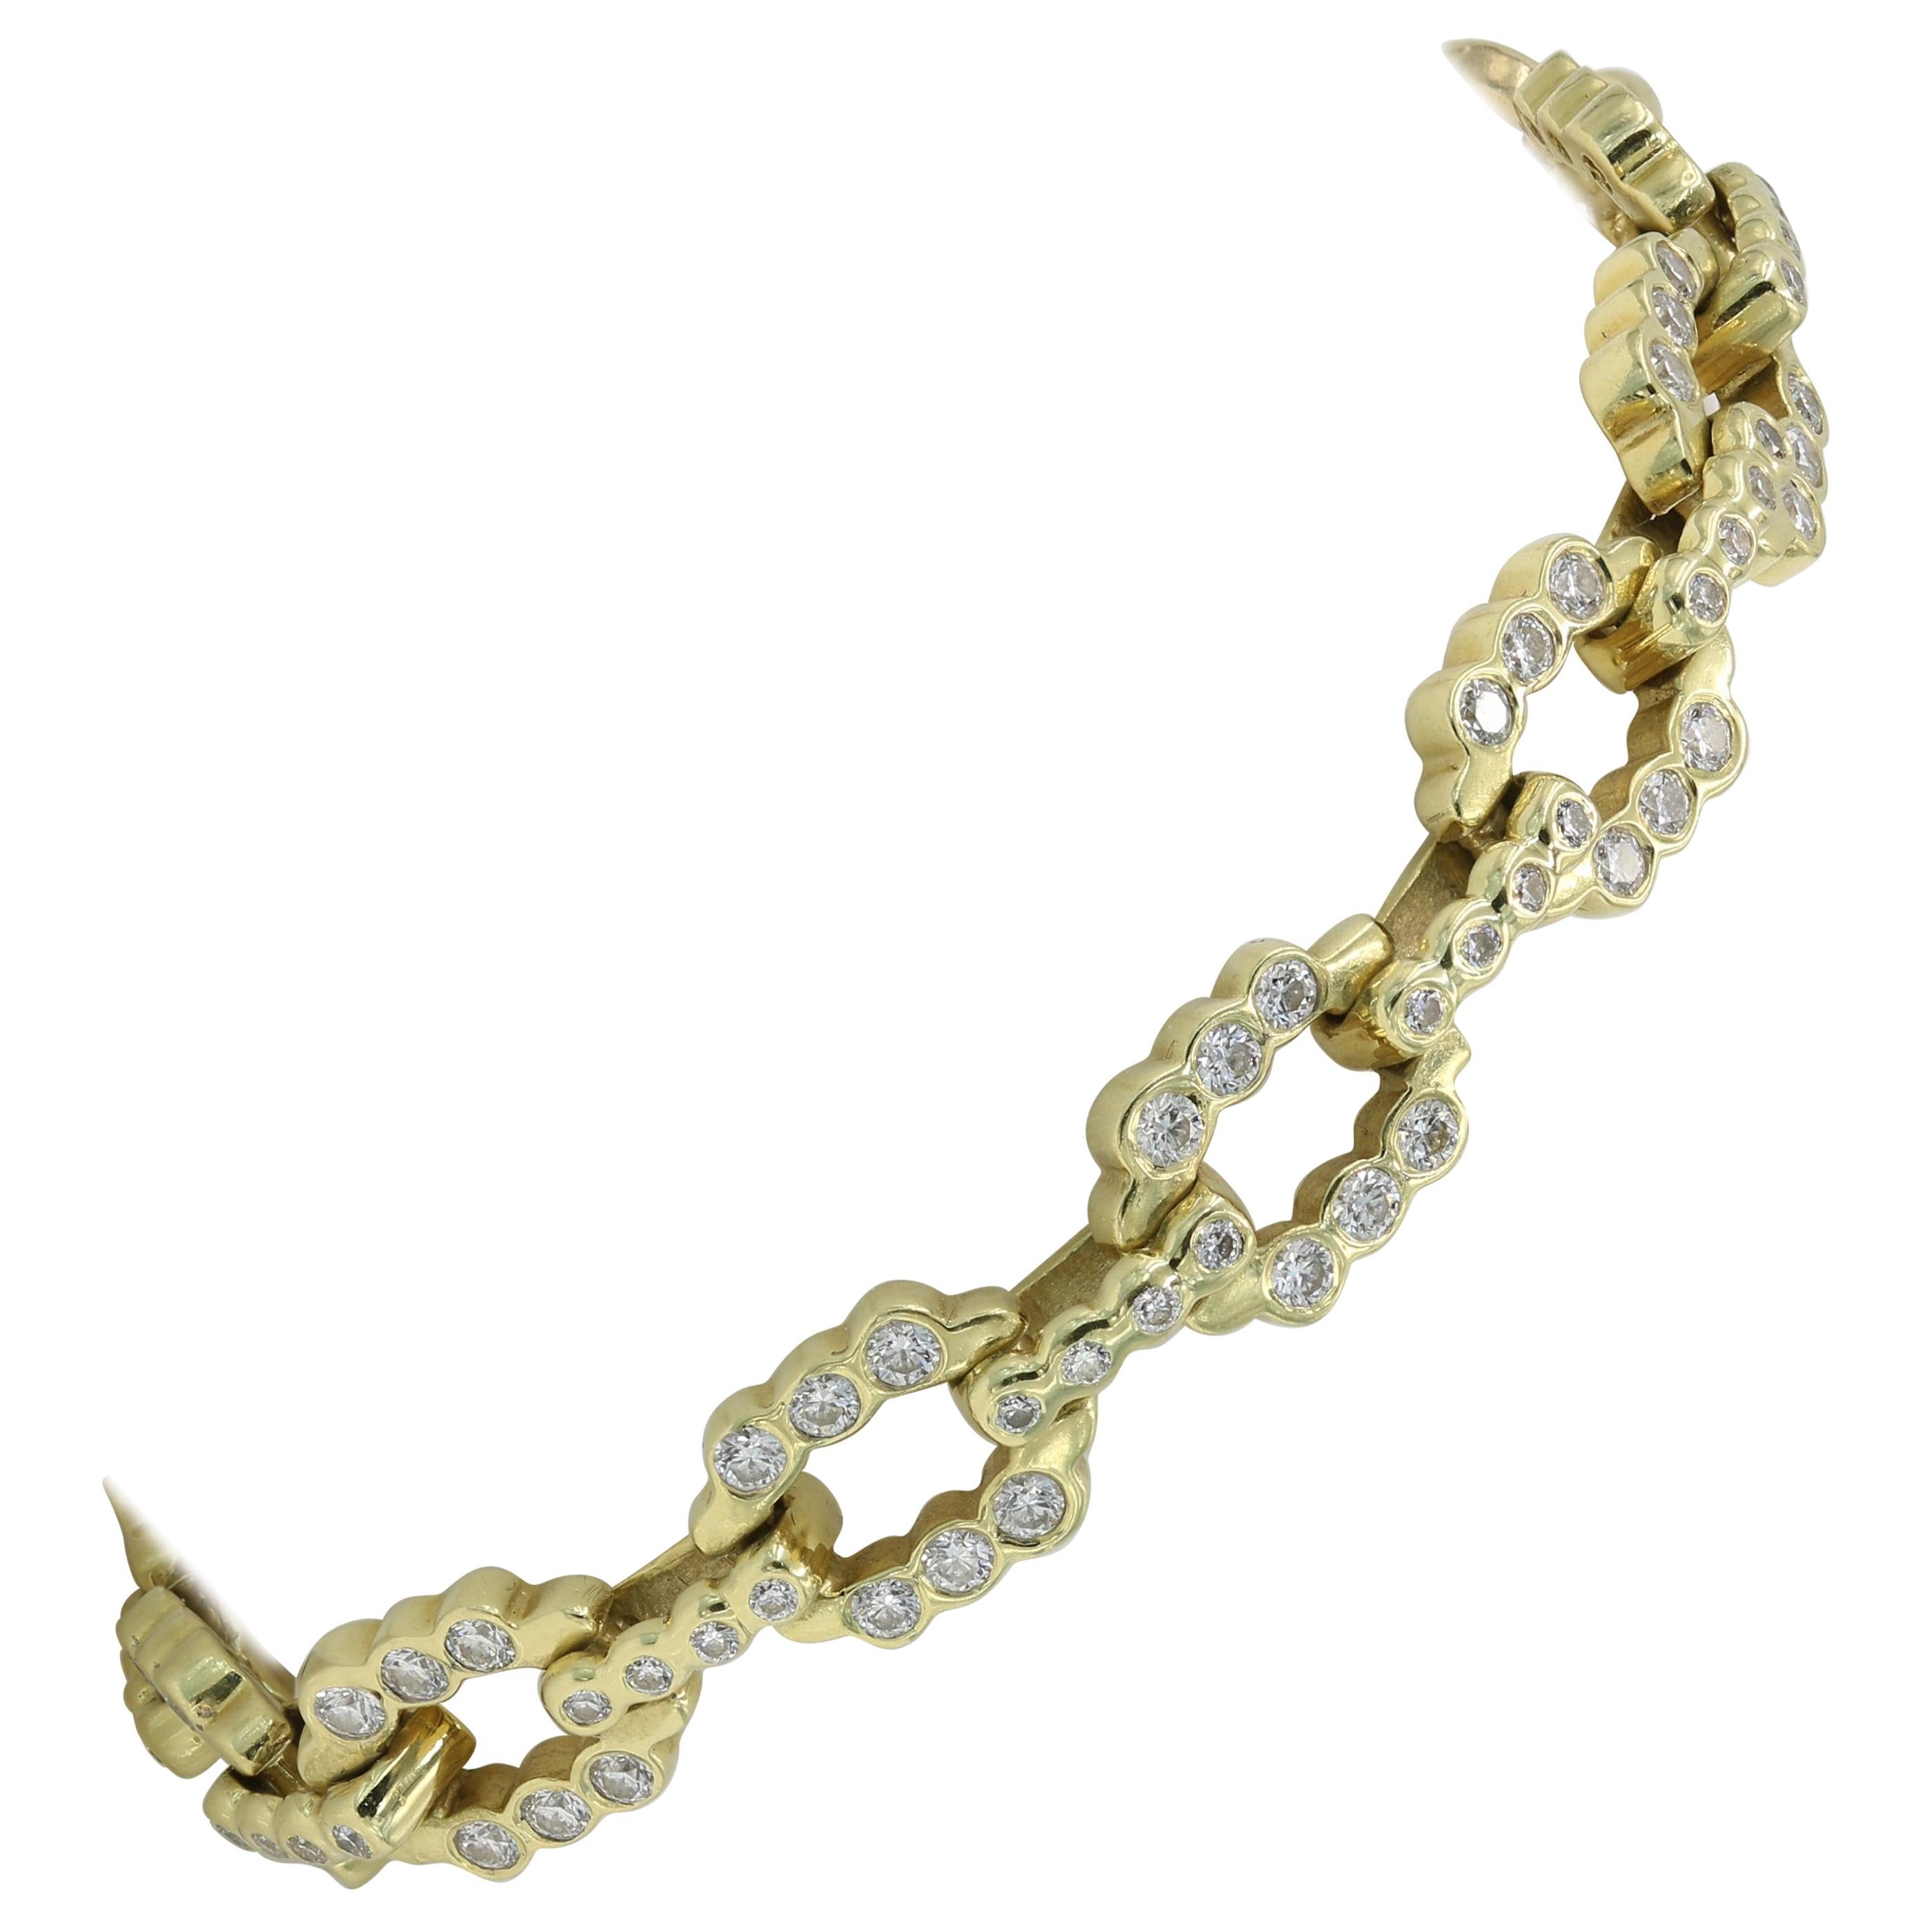 Lester Lampert Designed Diamond Link Bracelet in 18 Karat Yellow Gold